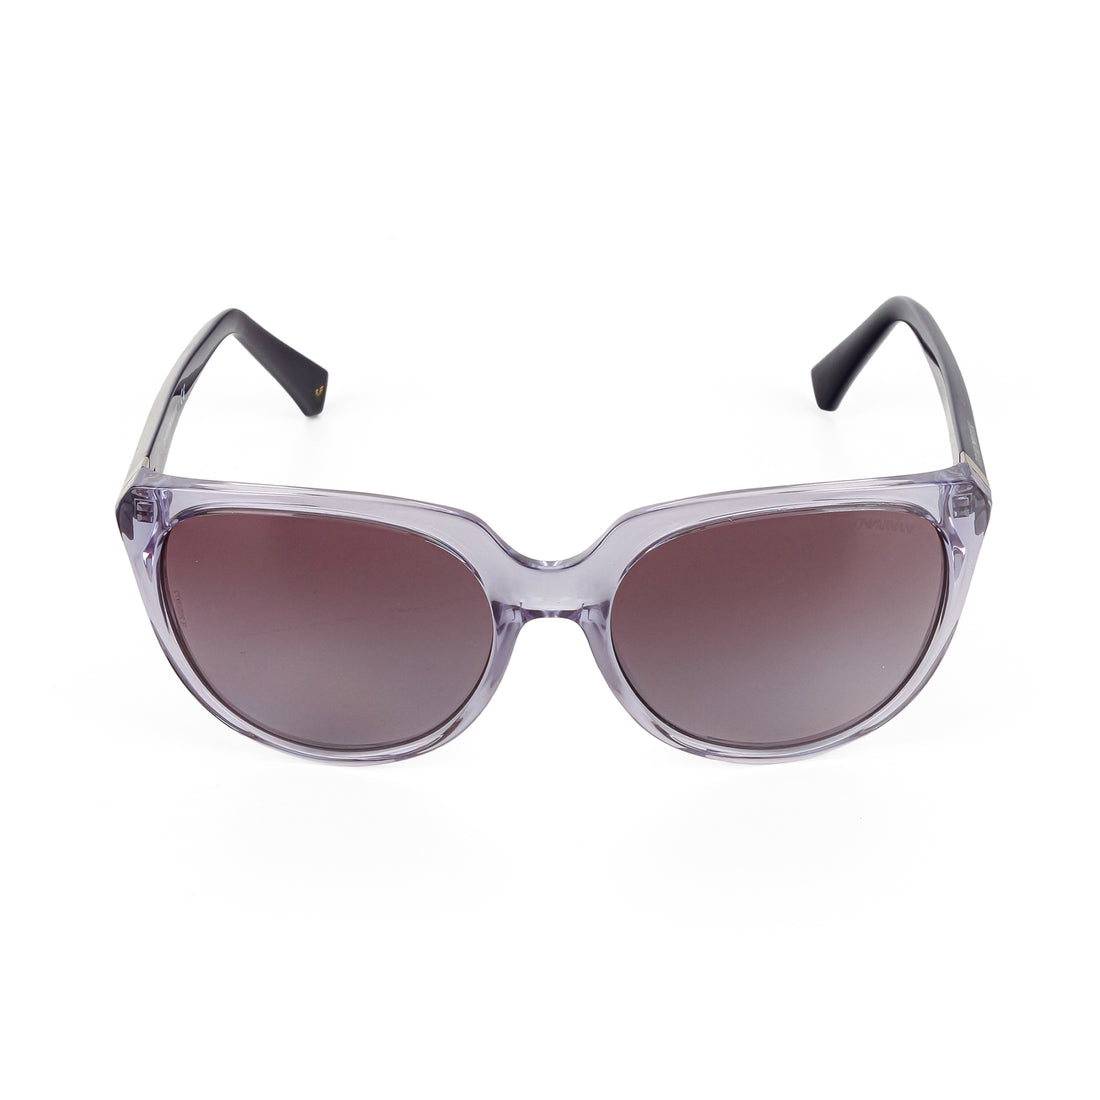 EMPORIO ARMANI 4027 Sunglasses - Purple